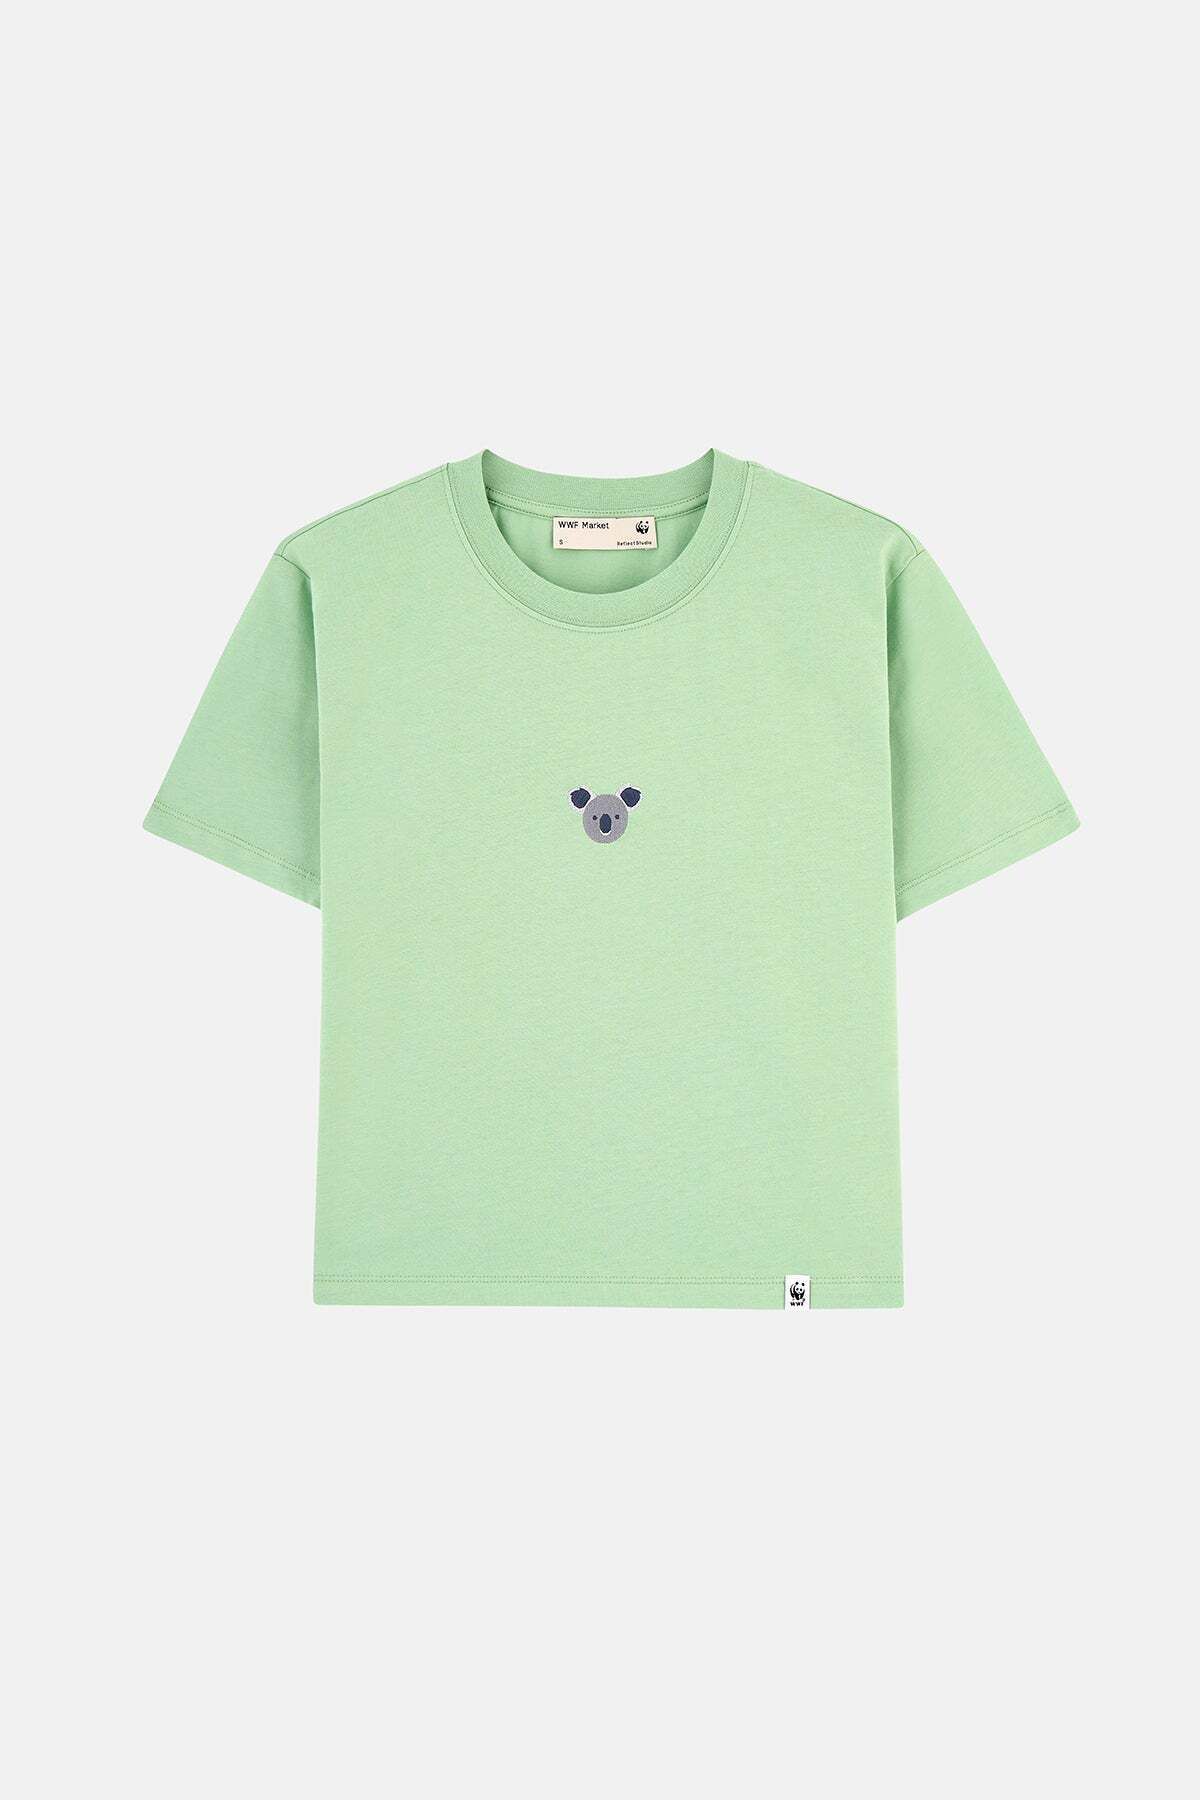 WWF Market Koala Supreme Kadın T-shirt  - Su Yeşili